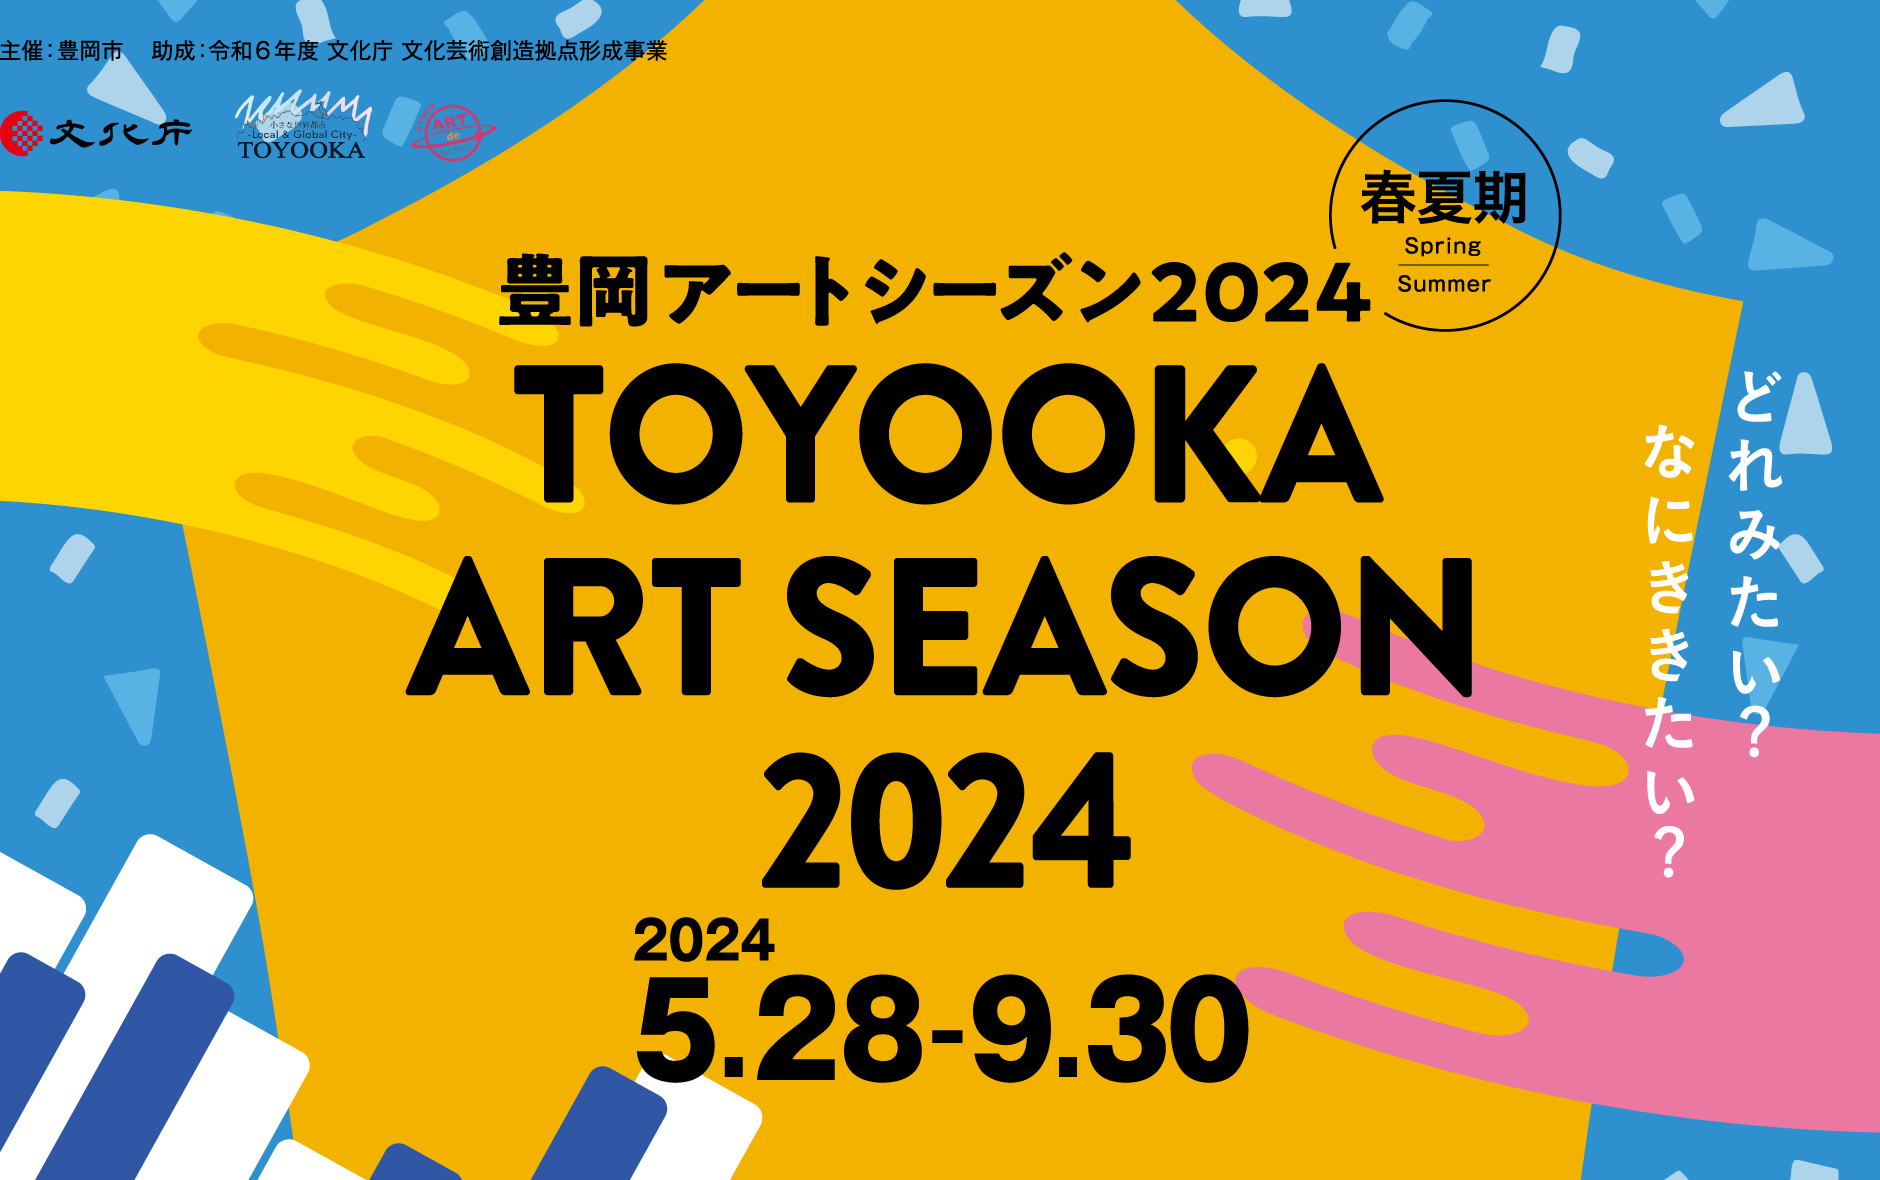 Toyooka Art Season 2024 SUMMER